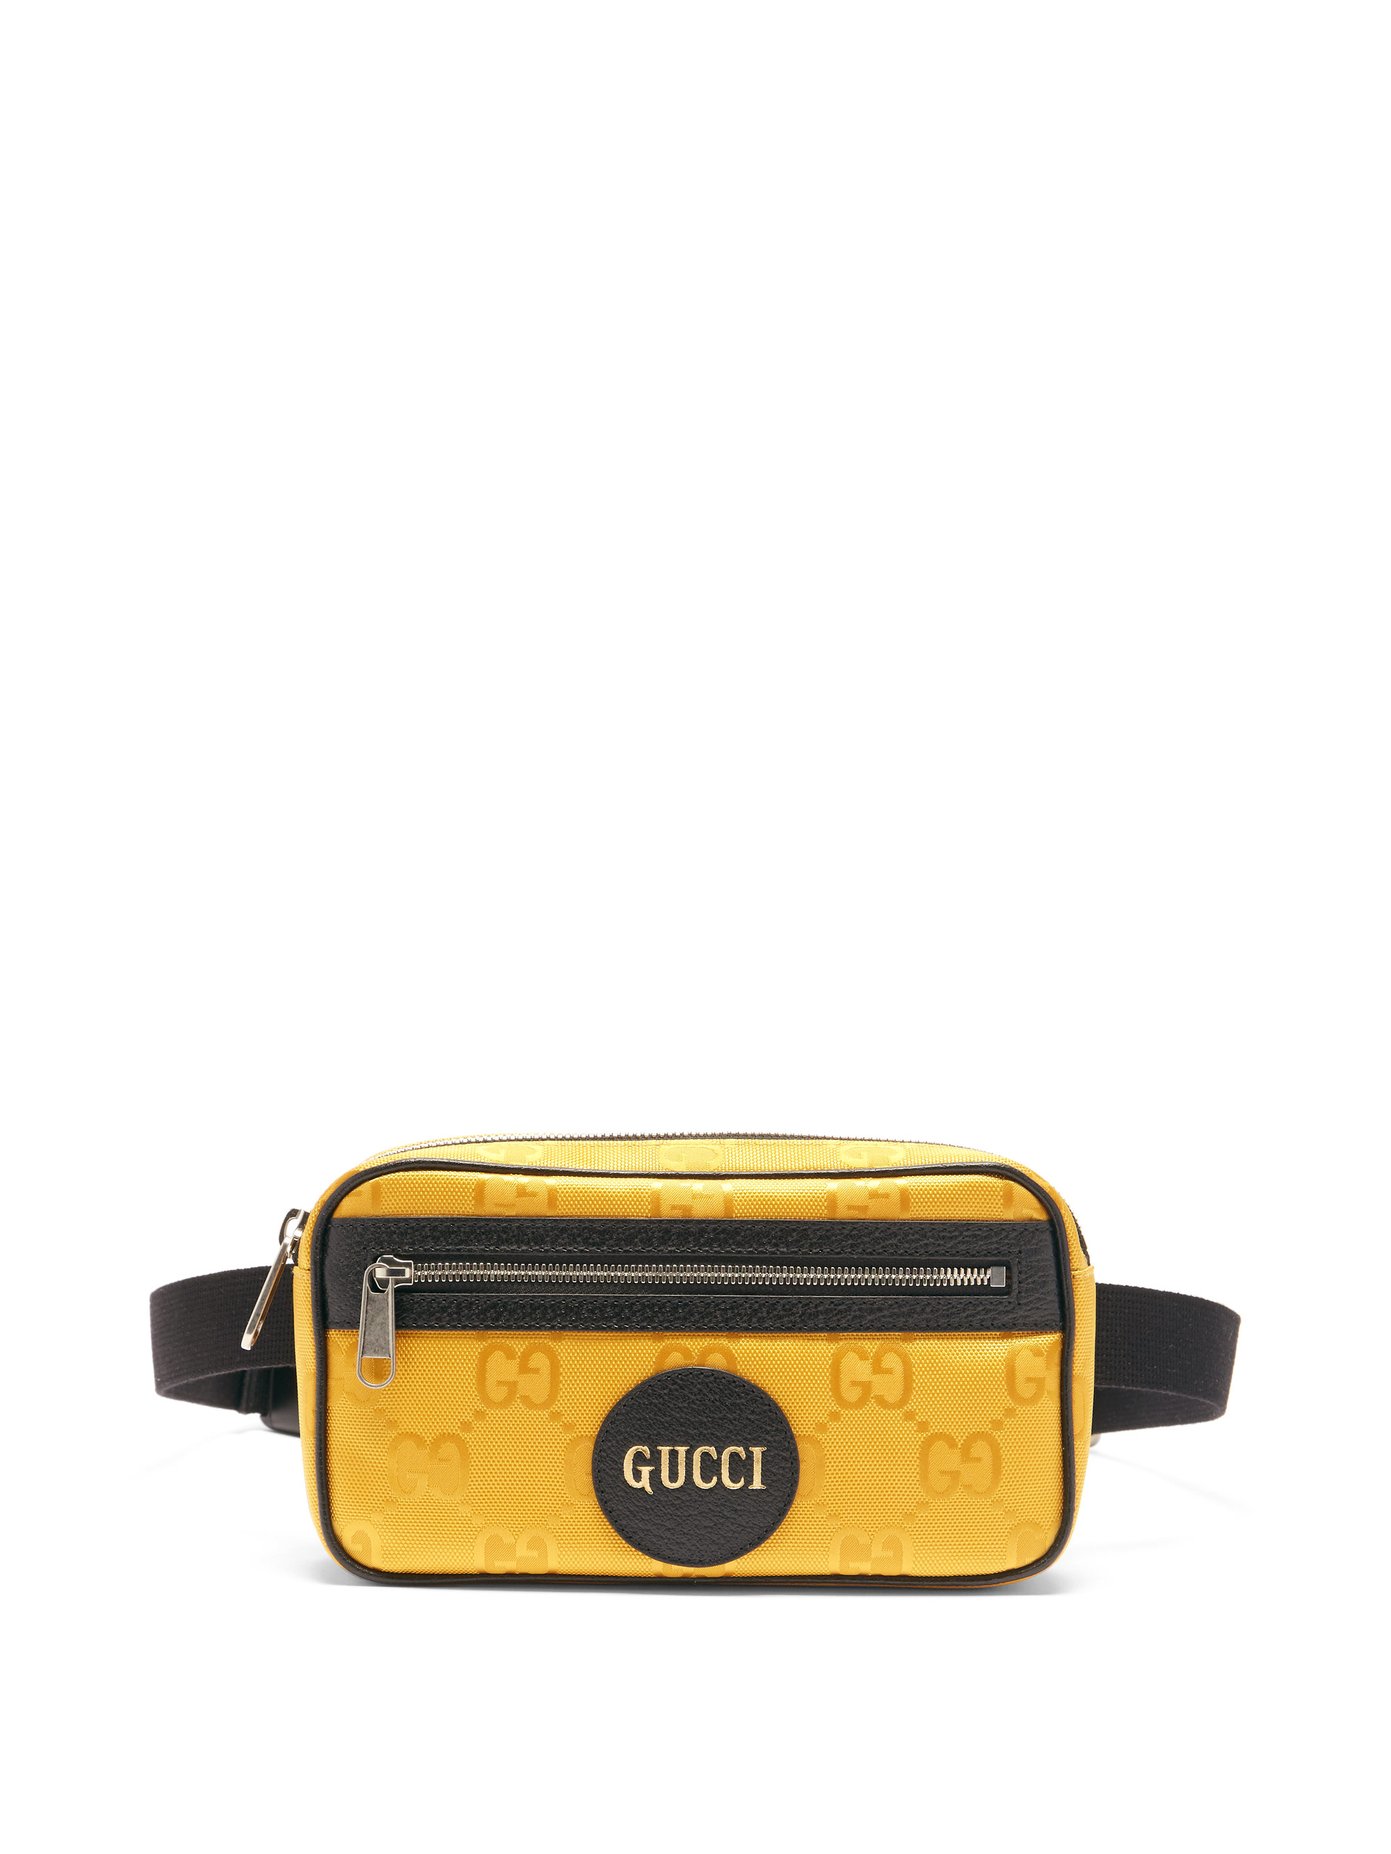 gucci yellow belt